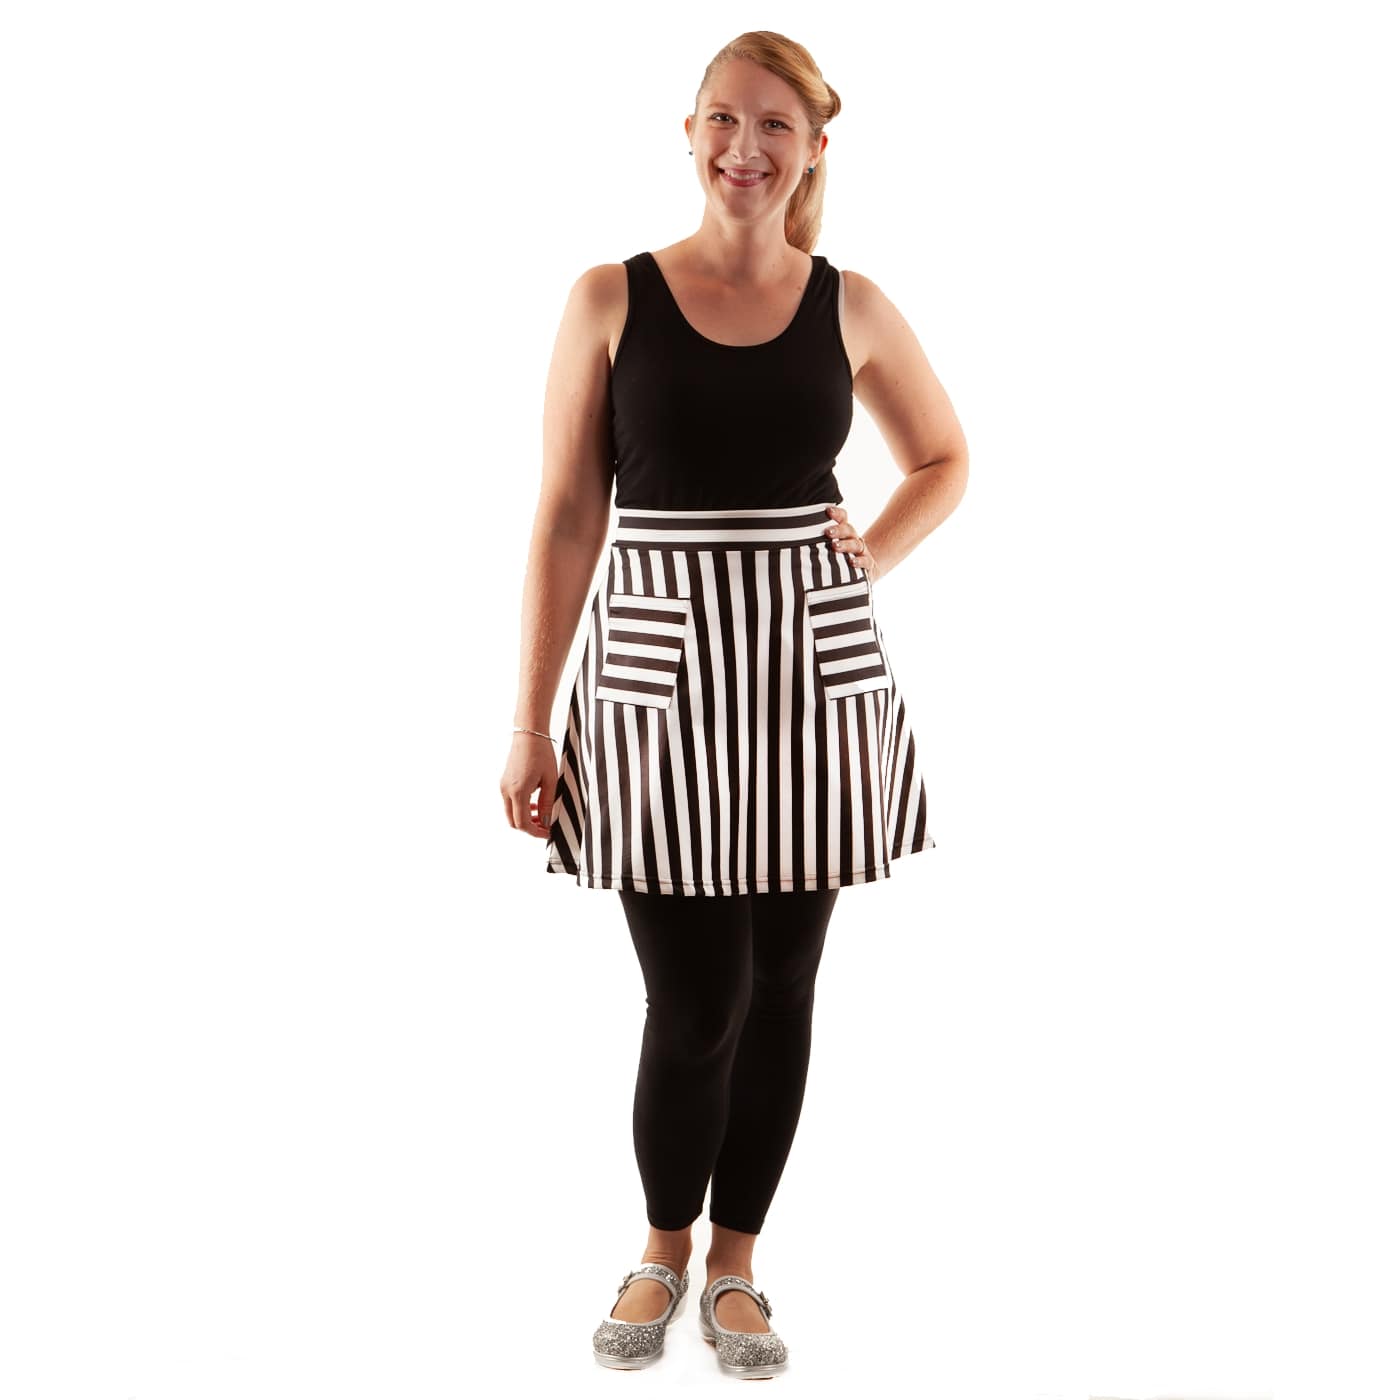 Zebra Short Skirt by RainbowsAndFairies.com (Black & White - Stripes - Monochrome - Skirt With Pockets - Aline Skirt - Cute Flirty - Vintage Inspired) - SKU: CL_SHORT_ZEBRA_ORG - Pic 03